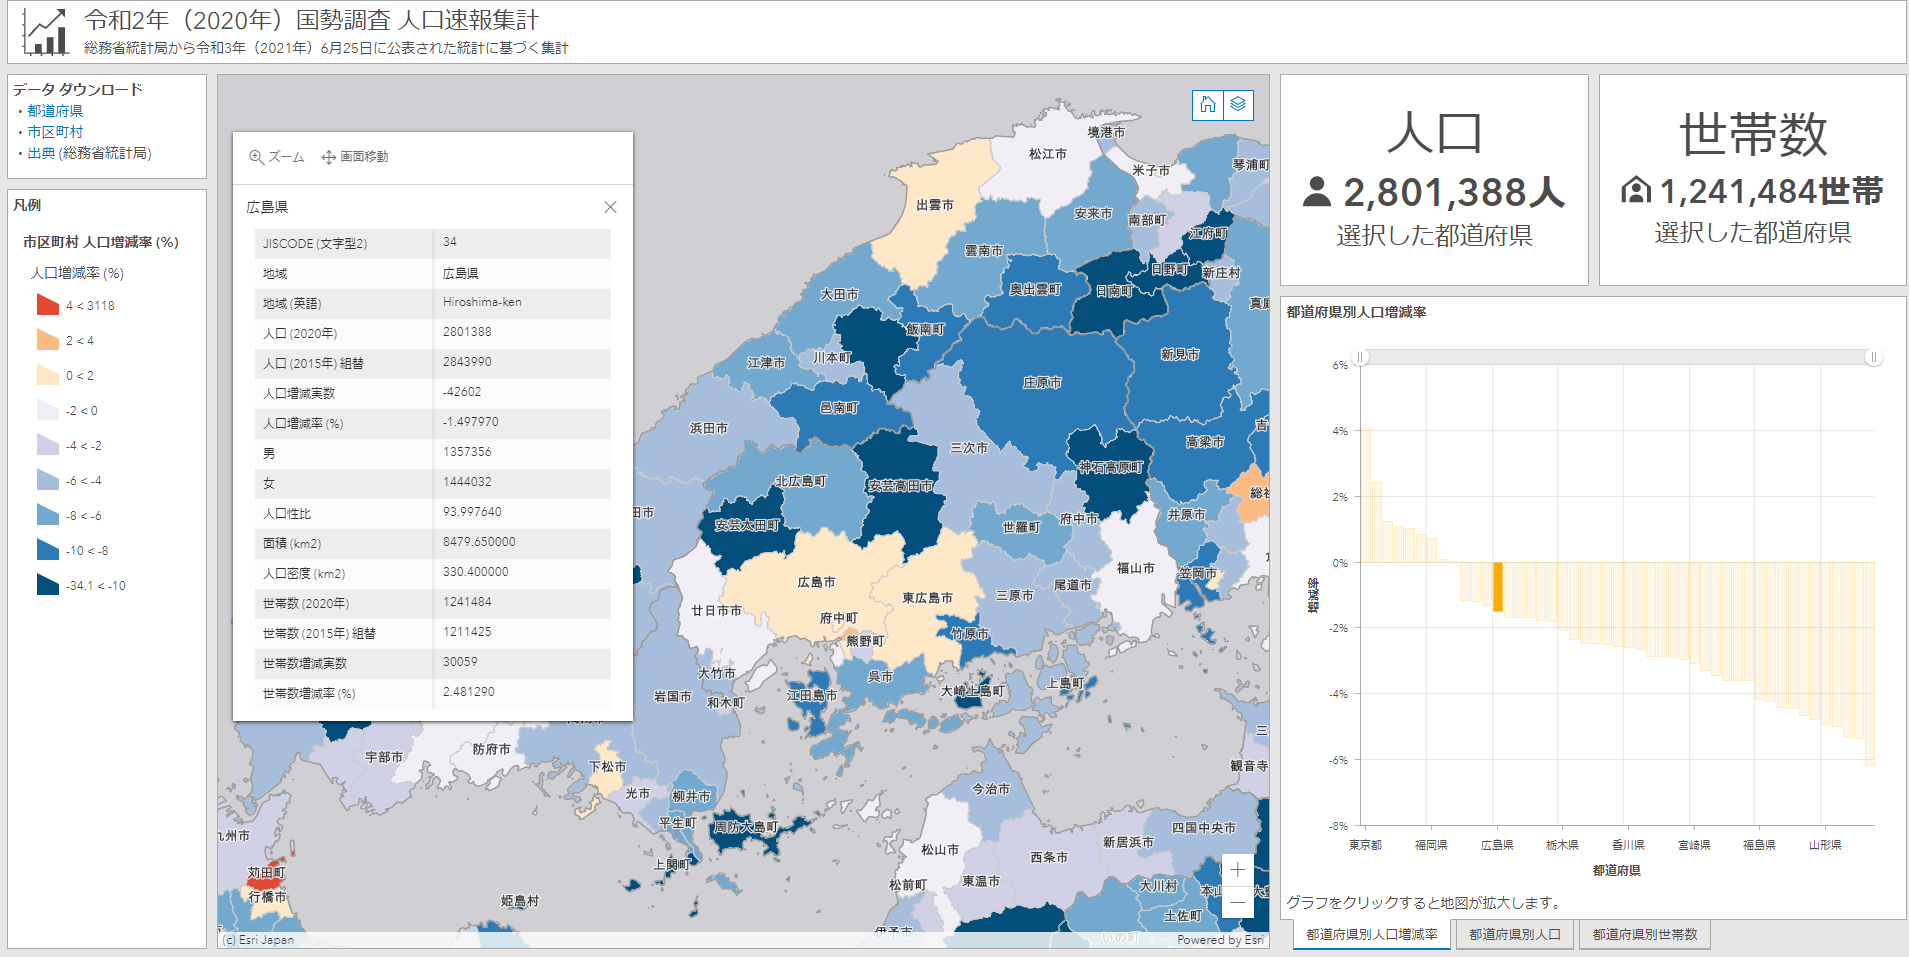 国勢調査 人口速報集計のダッシュボード アプリ